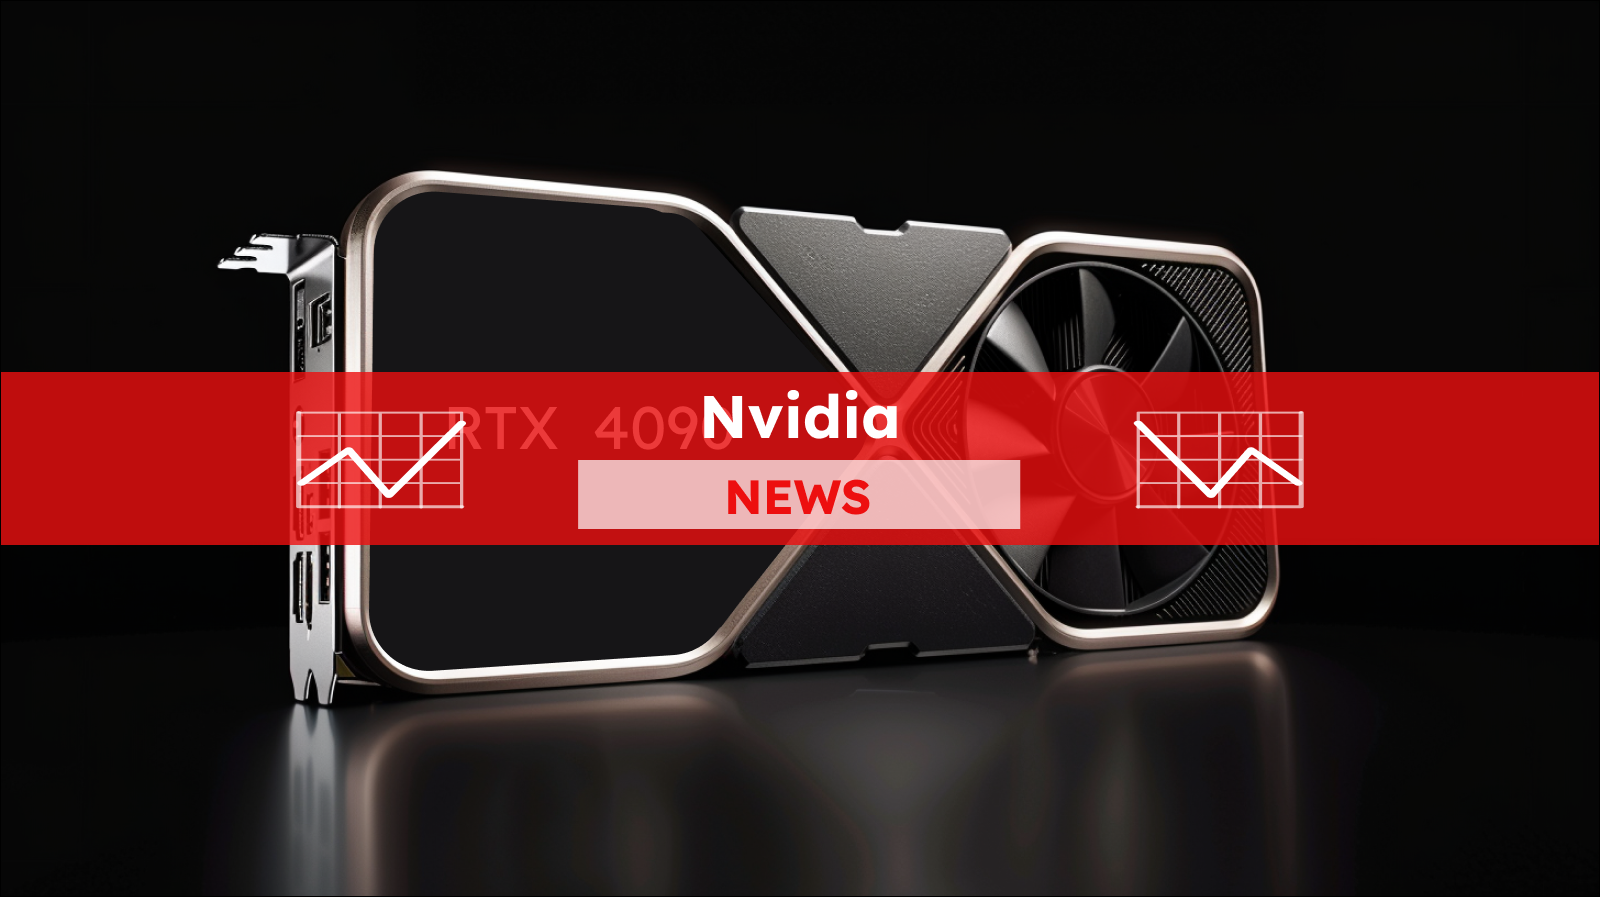 Grafikkarten GeForce auf dem schwarzen Hintergrund, mit einem Nvidia NEWS-Banner